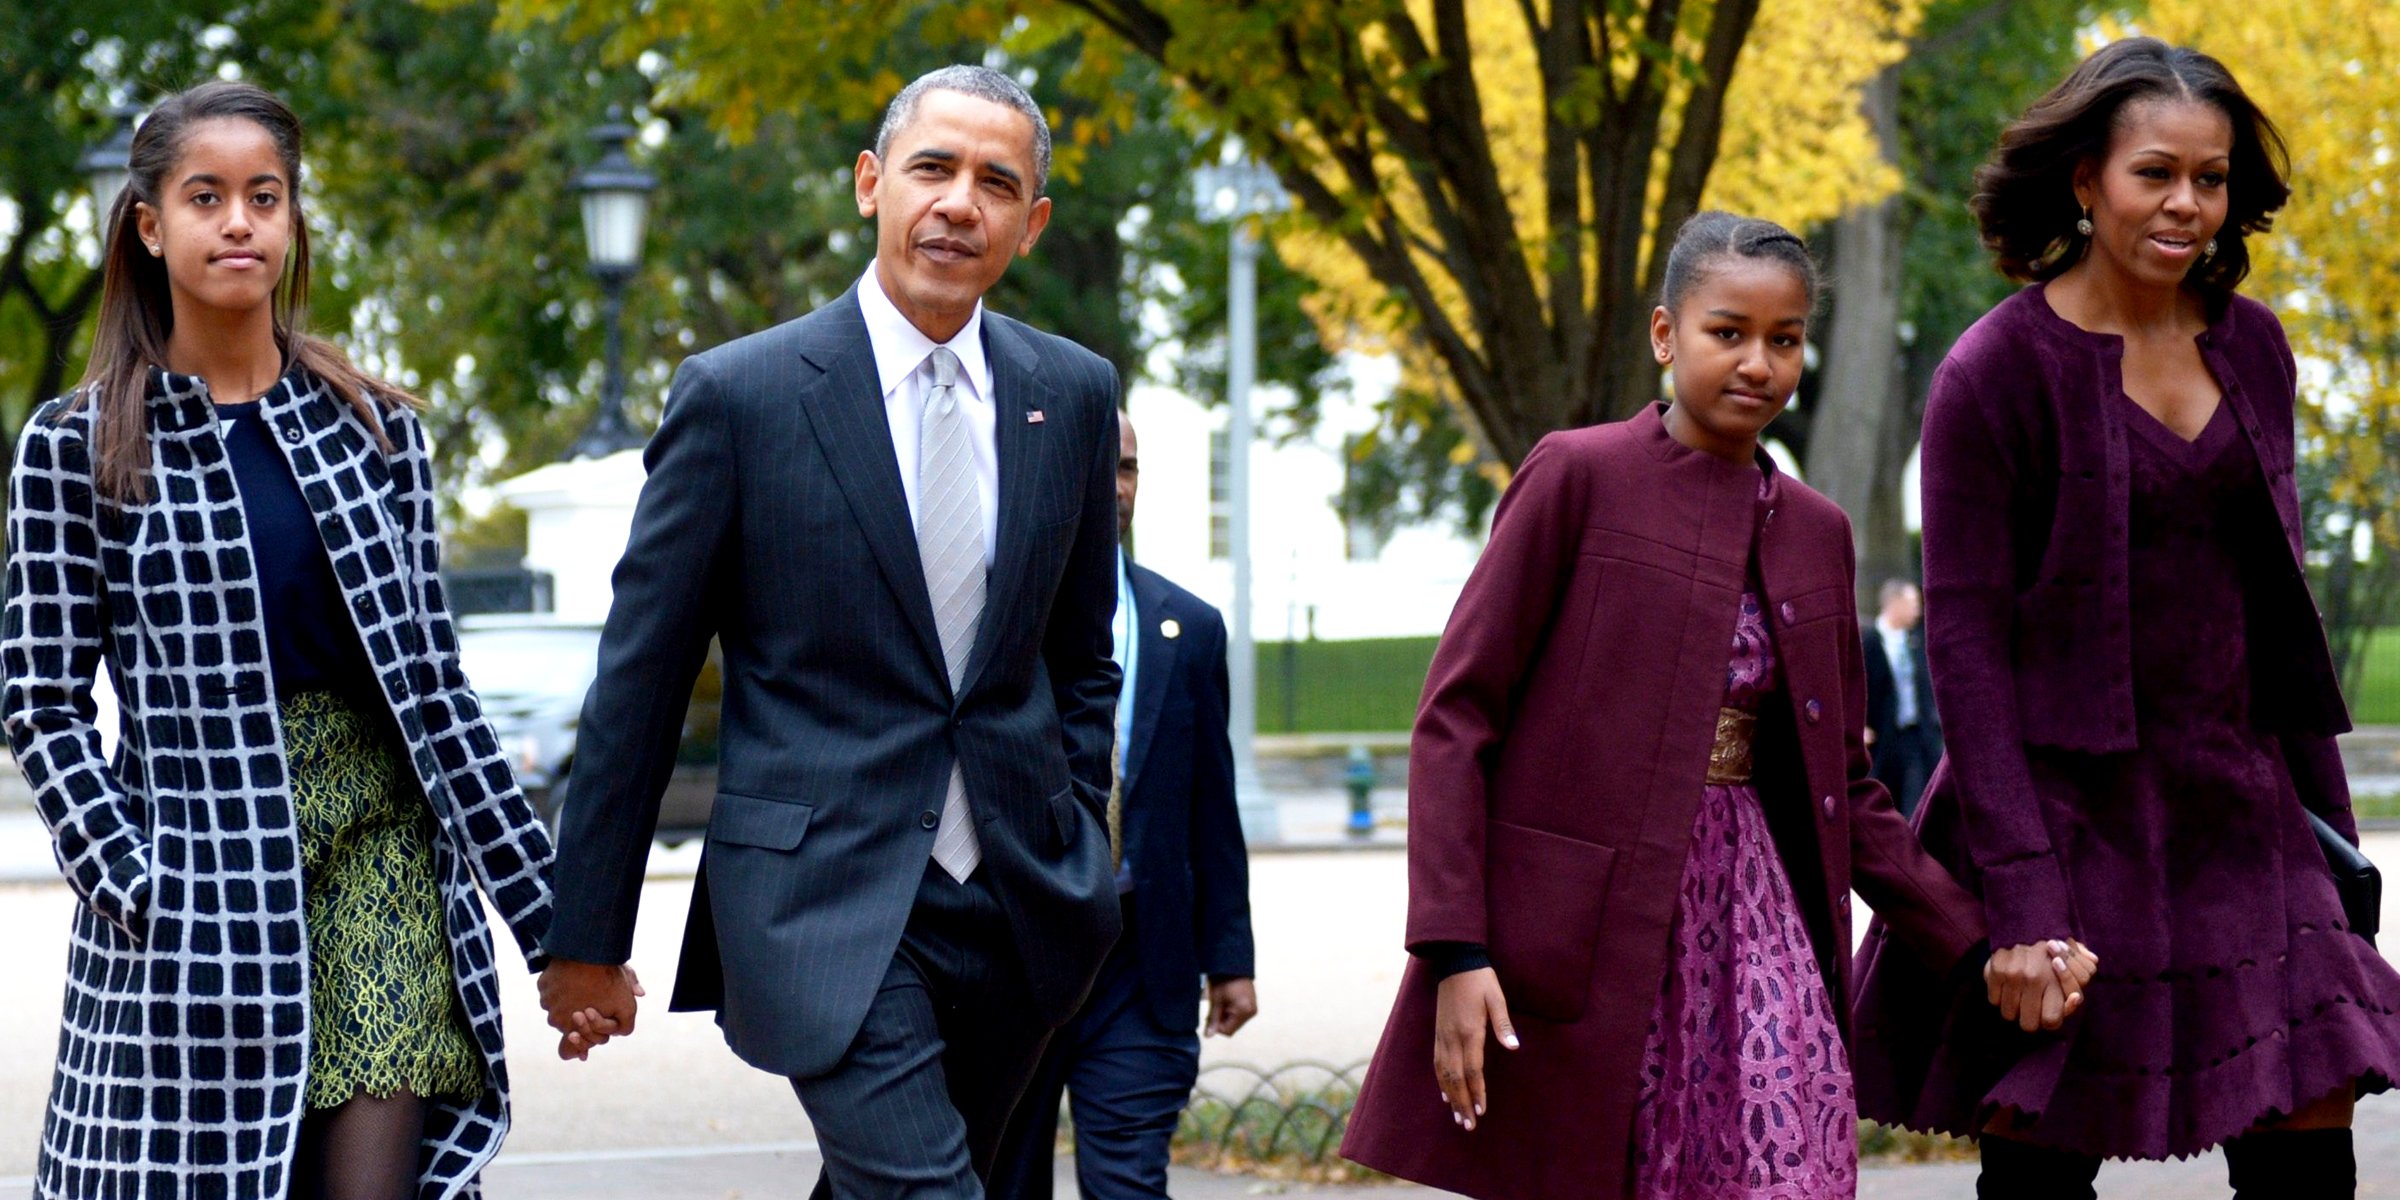 Malia, Barack, Sasha and Michelle Obama | Source: Getty Images